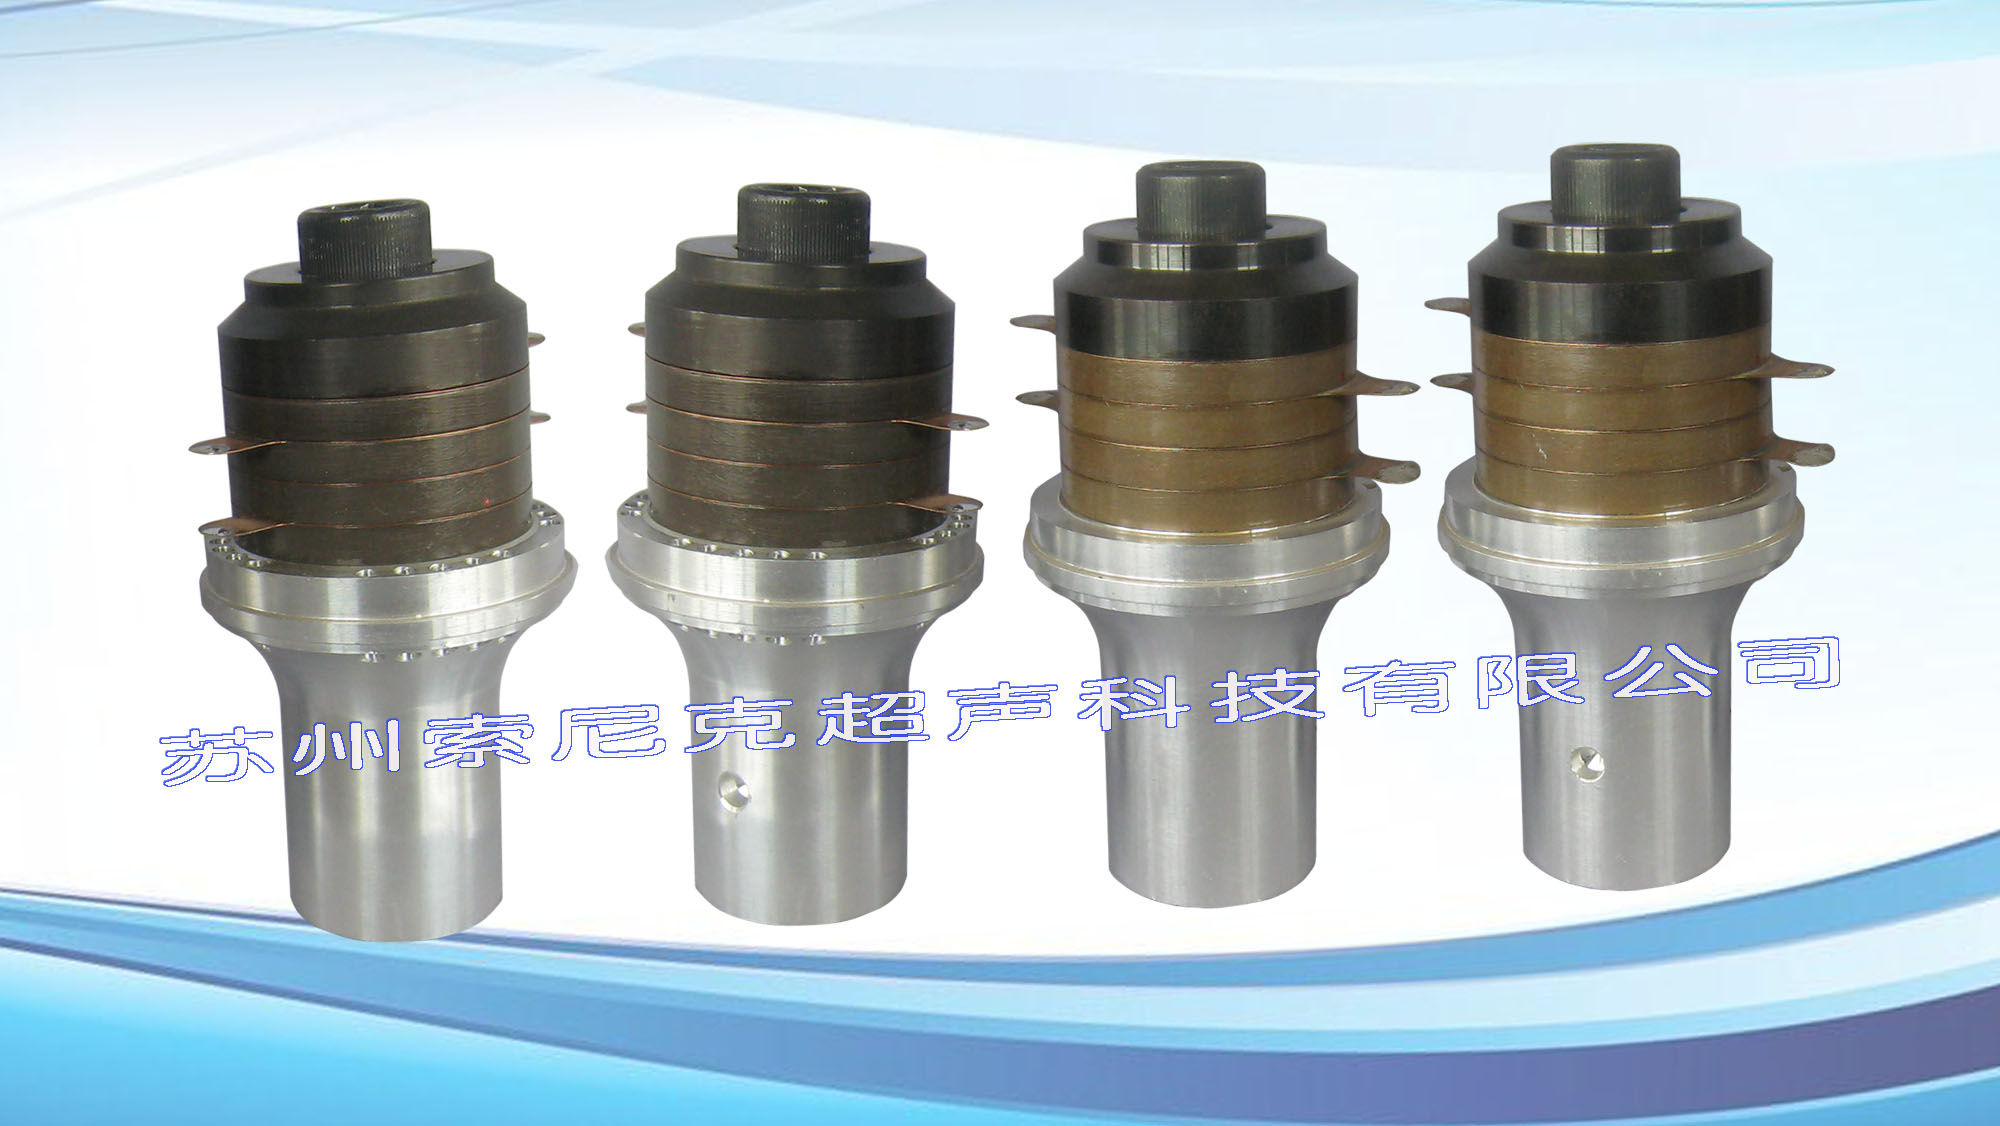 国产超声波焊接换能器,广州超声波换能器厂家,优质超声波振动子 JY-20-504D 